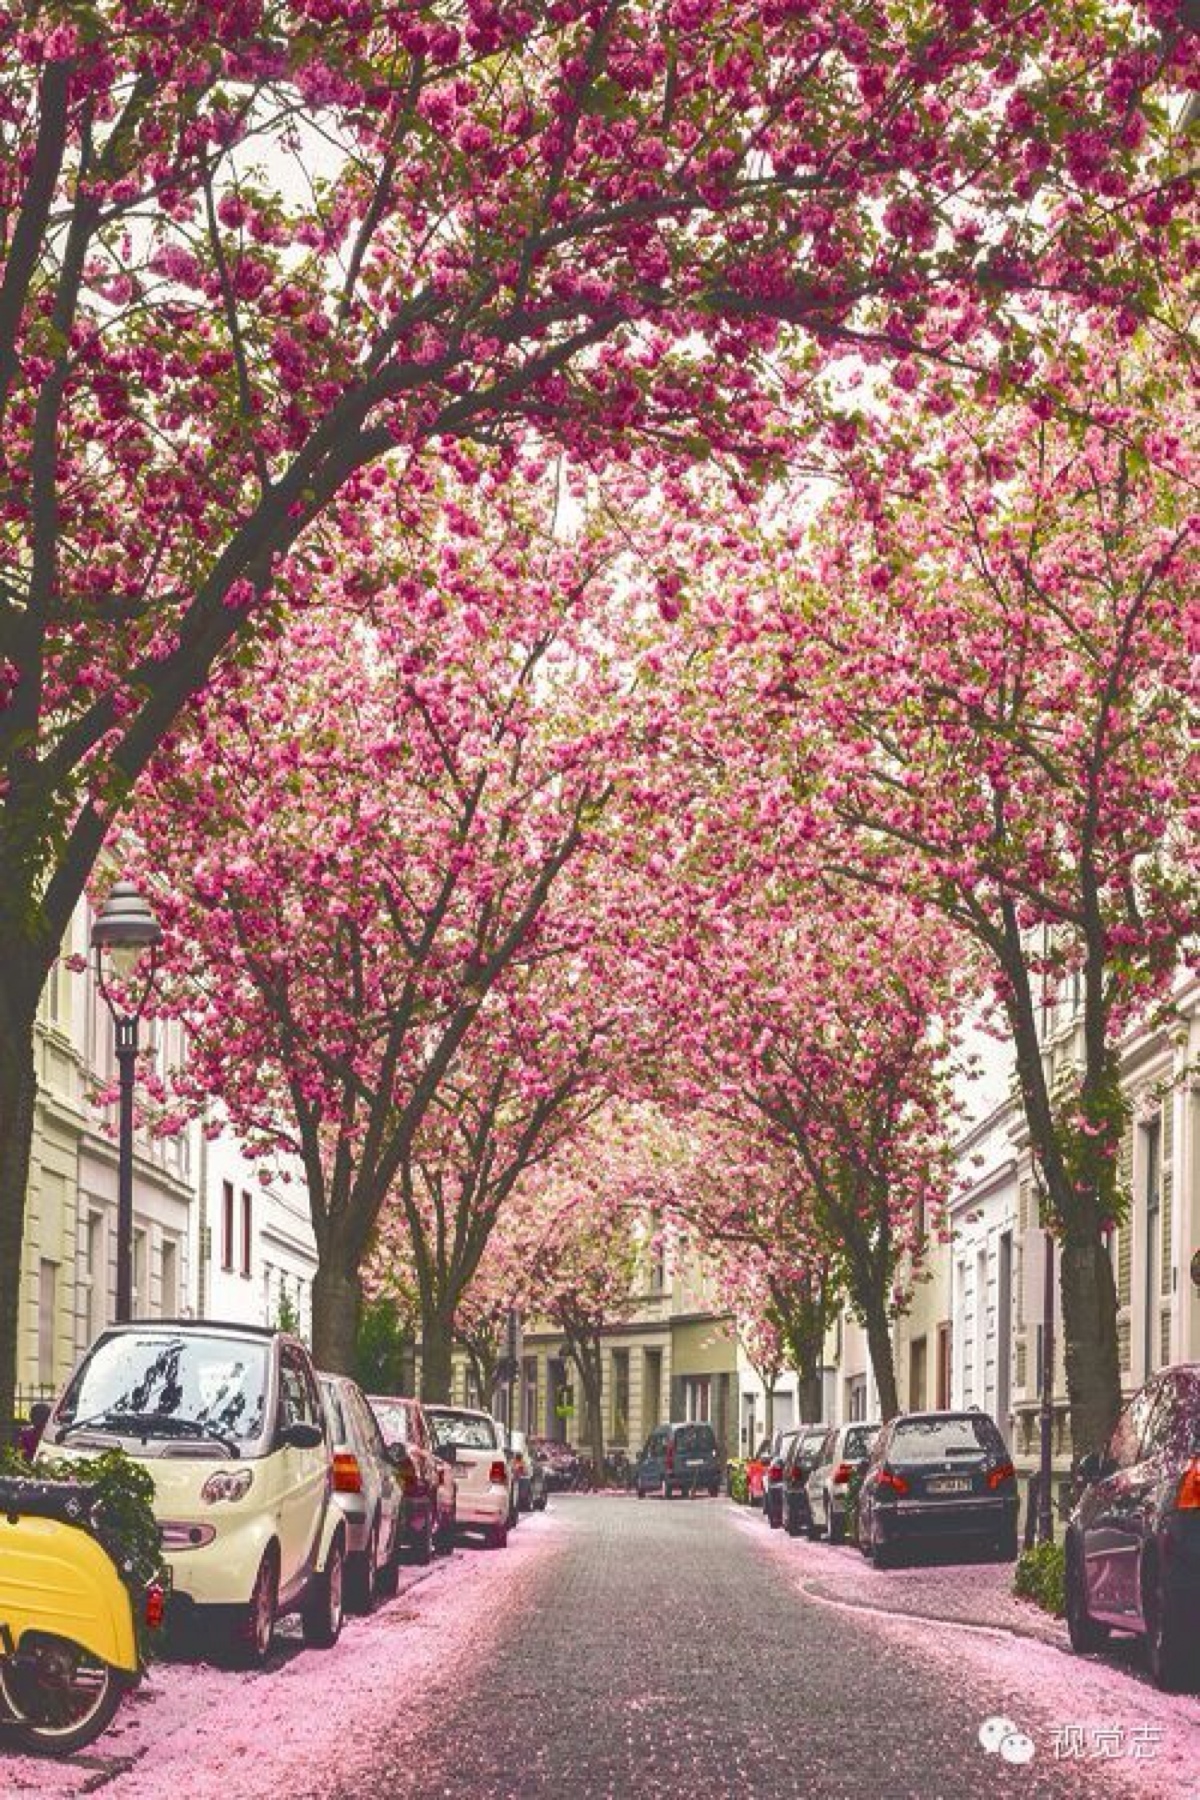 德国德国波恩的樱花隧道 每年春季, 德国波恩的这条街道就会变成让人